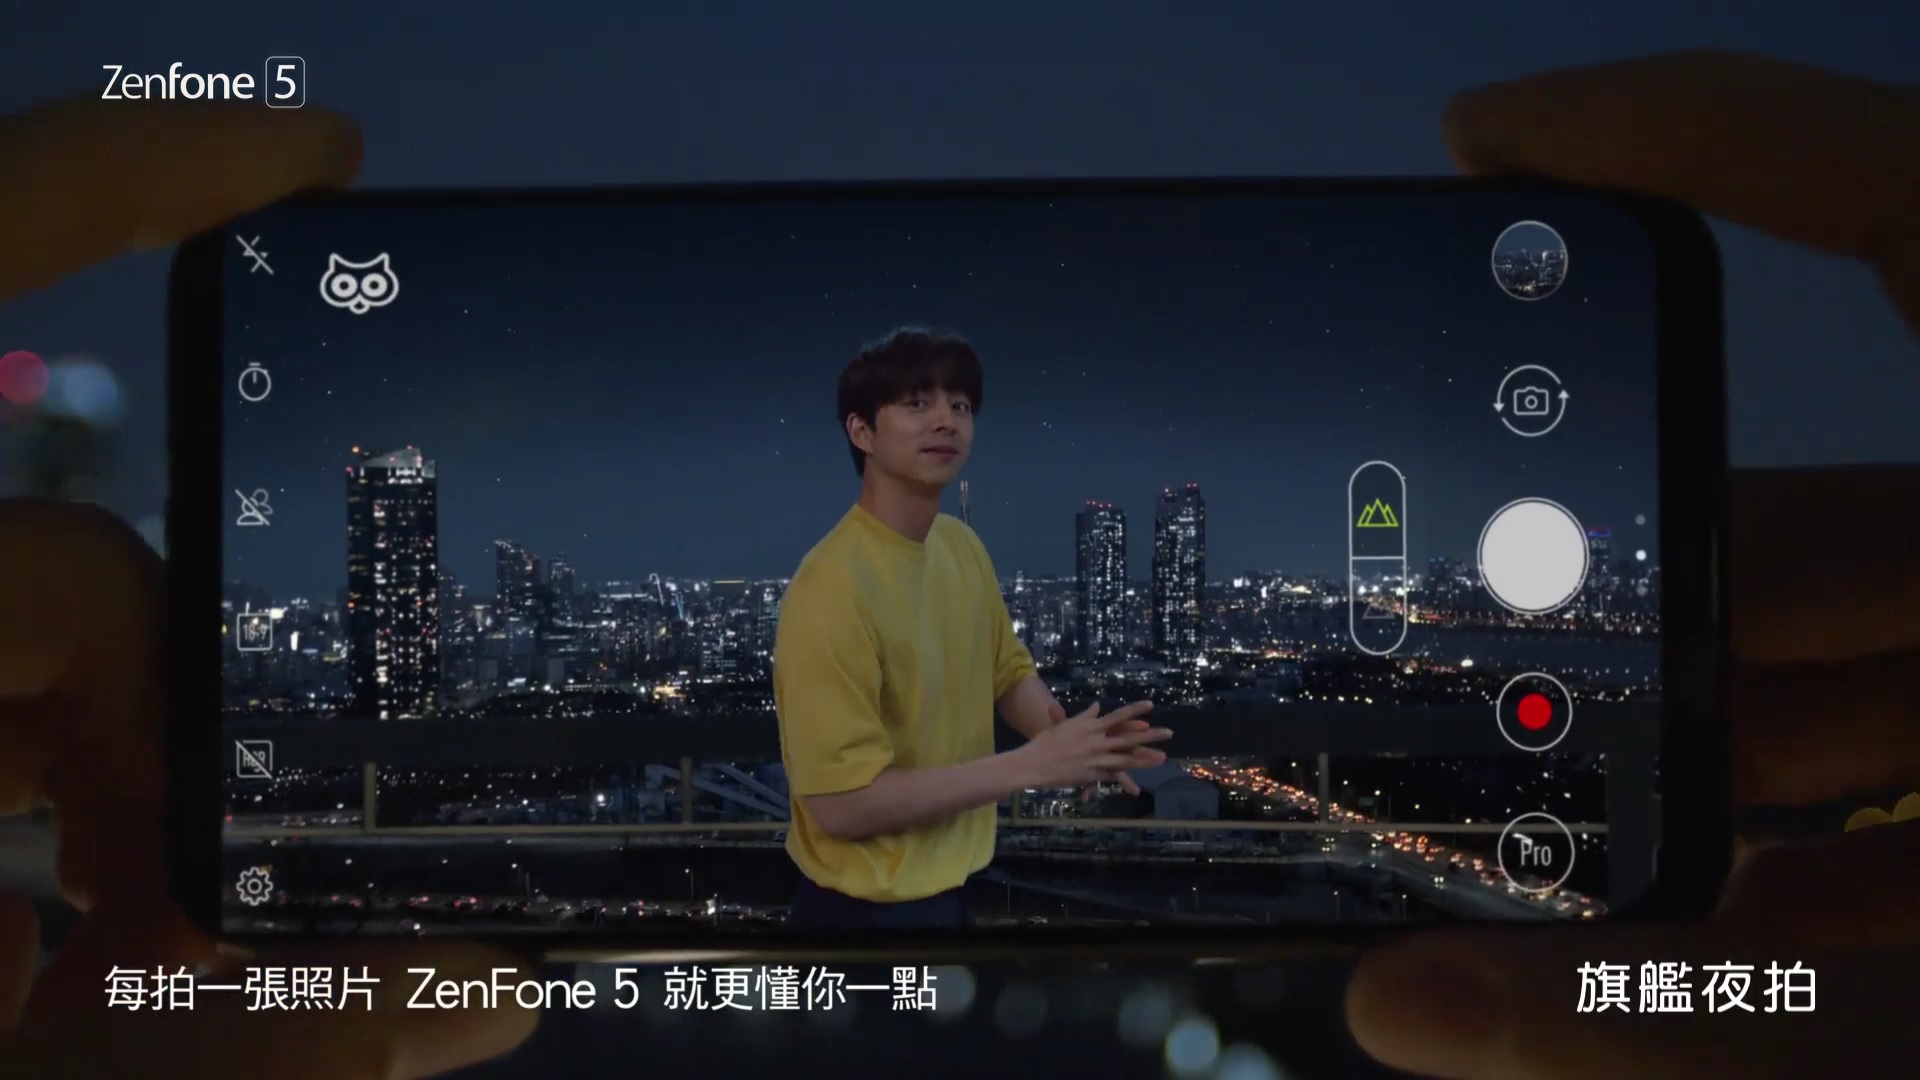 機械人 vs 真人：Asus 最新宣傳影片找來兩位孔劉展示 Zenfone 5 的超強 AI 相機；宣告越拍越懂你！ 2